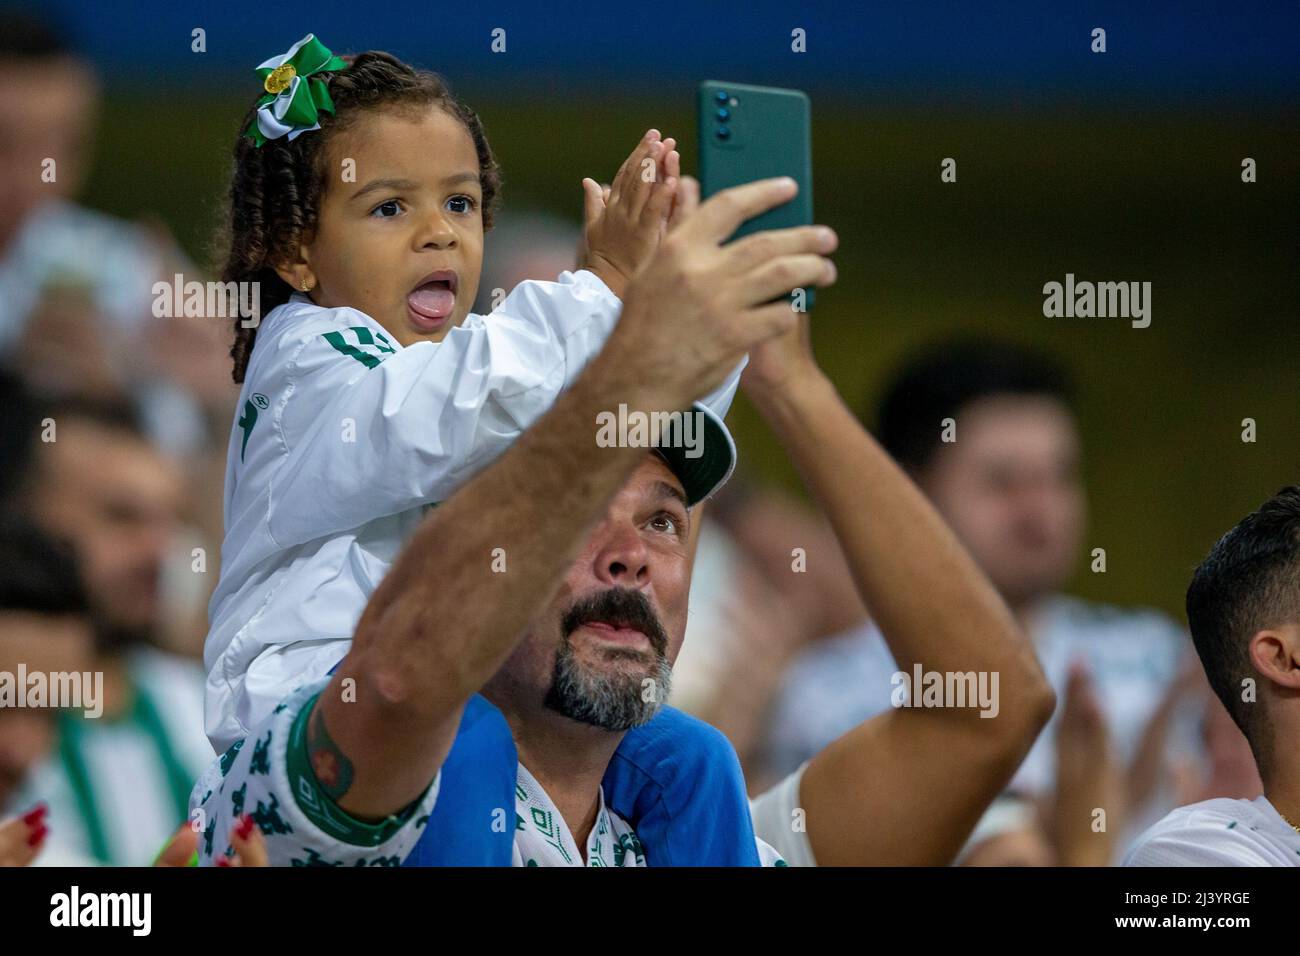 Palmeiras 2 x 1 Santos - Paulista Feminino 2022!Palmeiras Campeão! -  Araraquara News